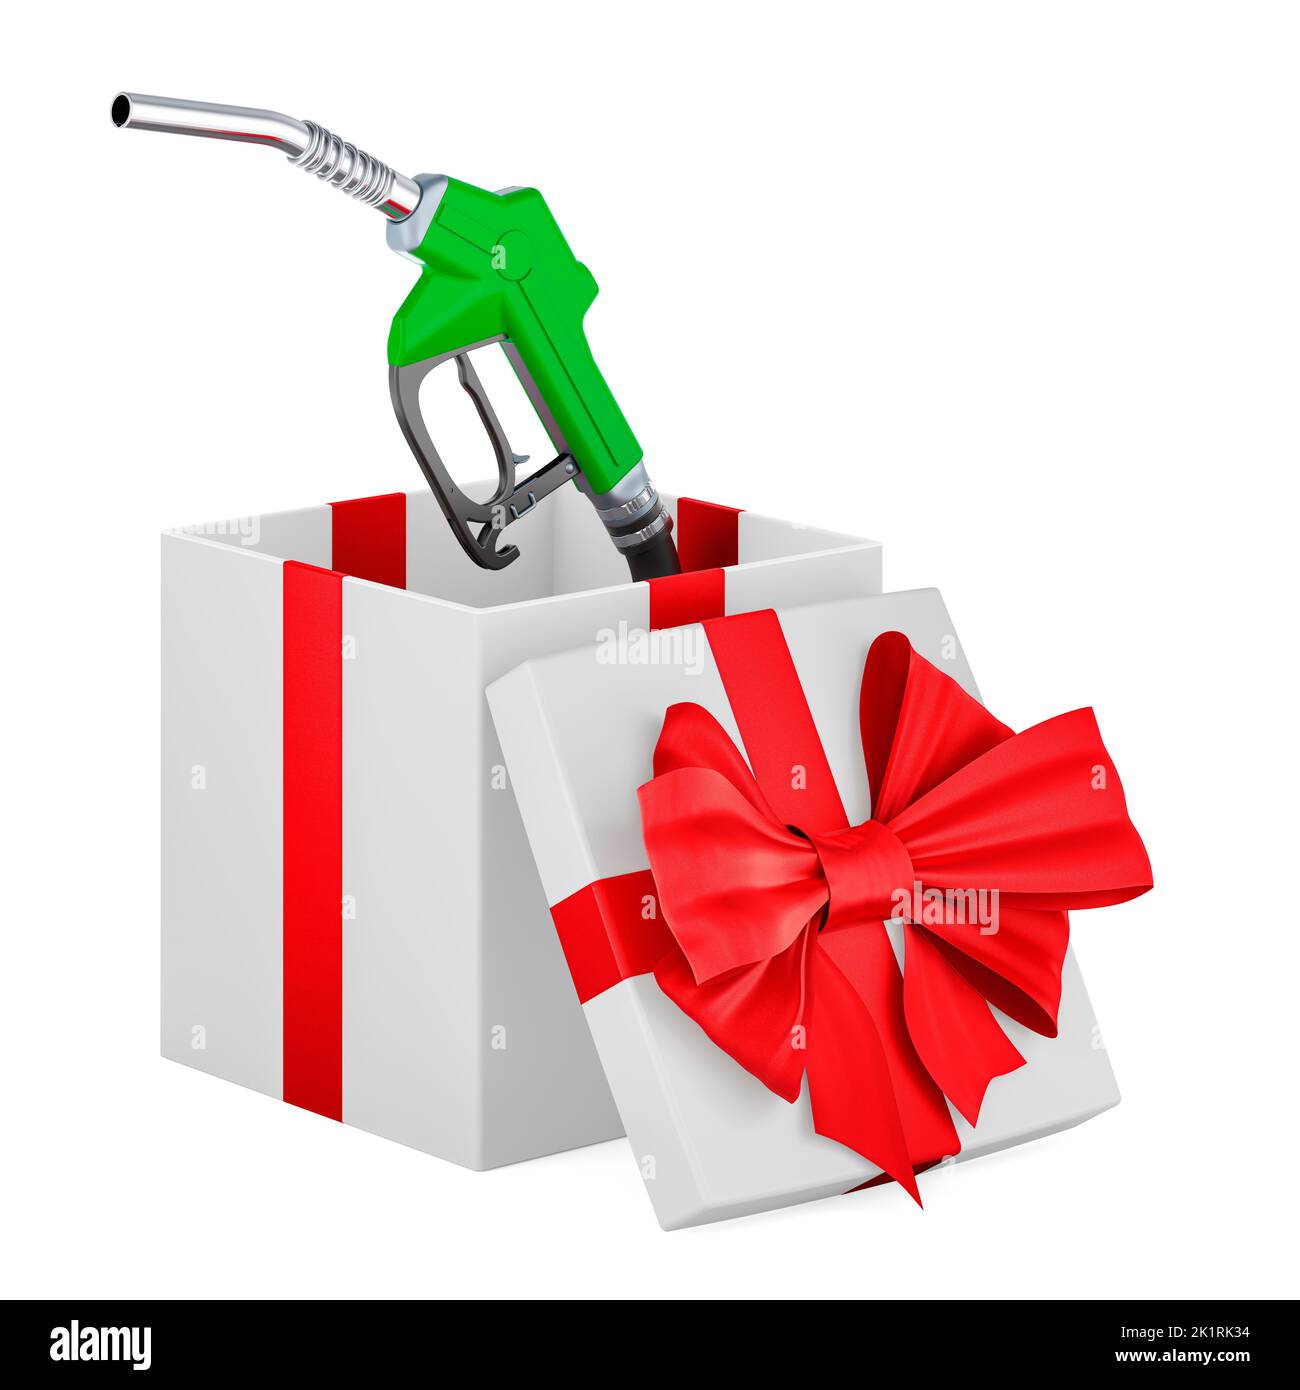 Gaspumpendüse im Geschenkkarton, Geschenkkonzept. 3D Darstellung isoliert auf weißem Hintergrund Stockfoto